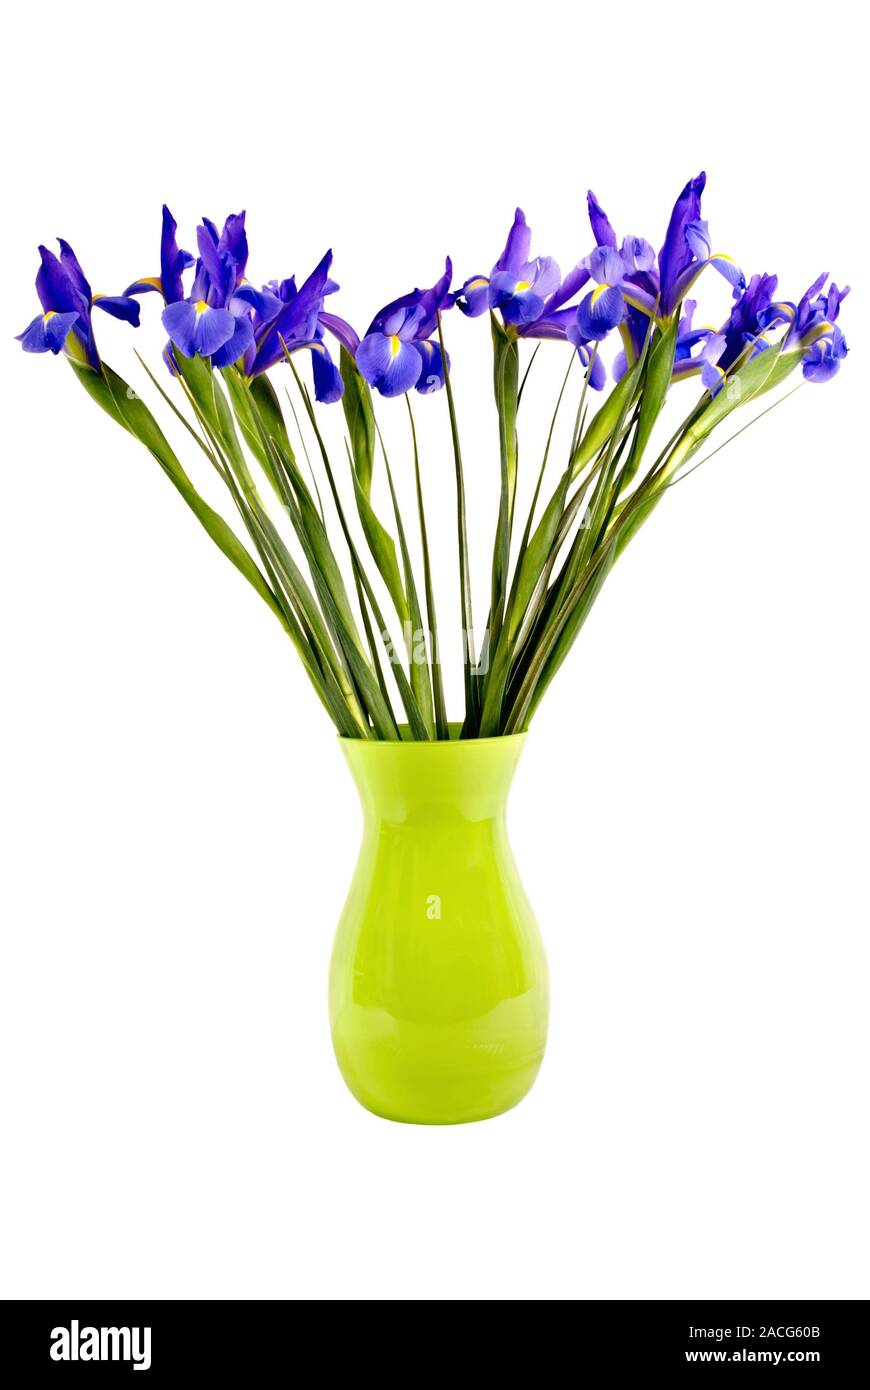 Un taglio fresco bouquet di bandiera blu iride fiori con steli lunghi in un verde lime vaso di vetro. Isolato su sfondo bianco. Foto Stock